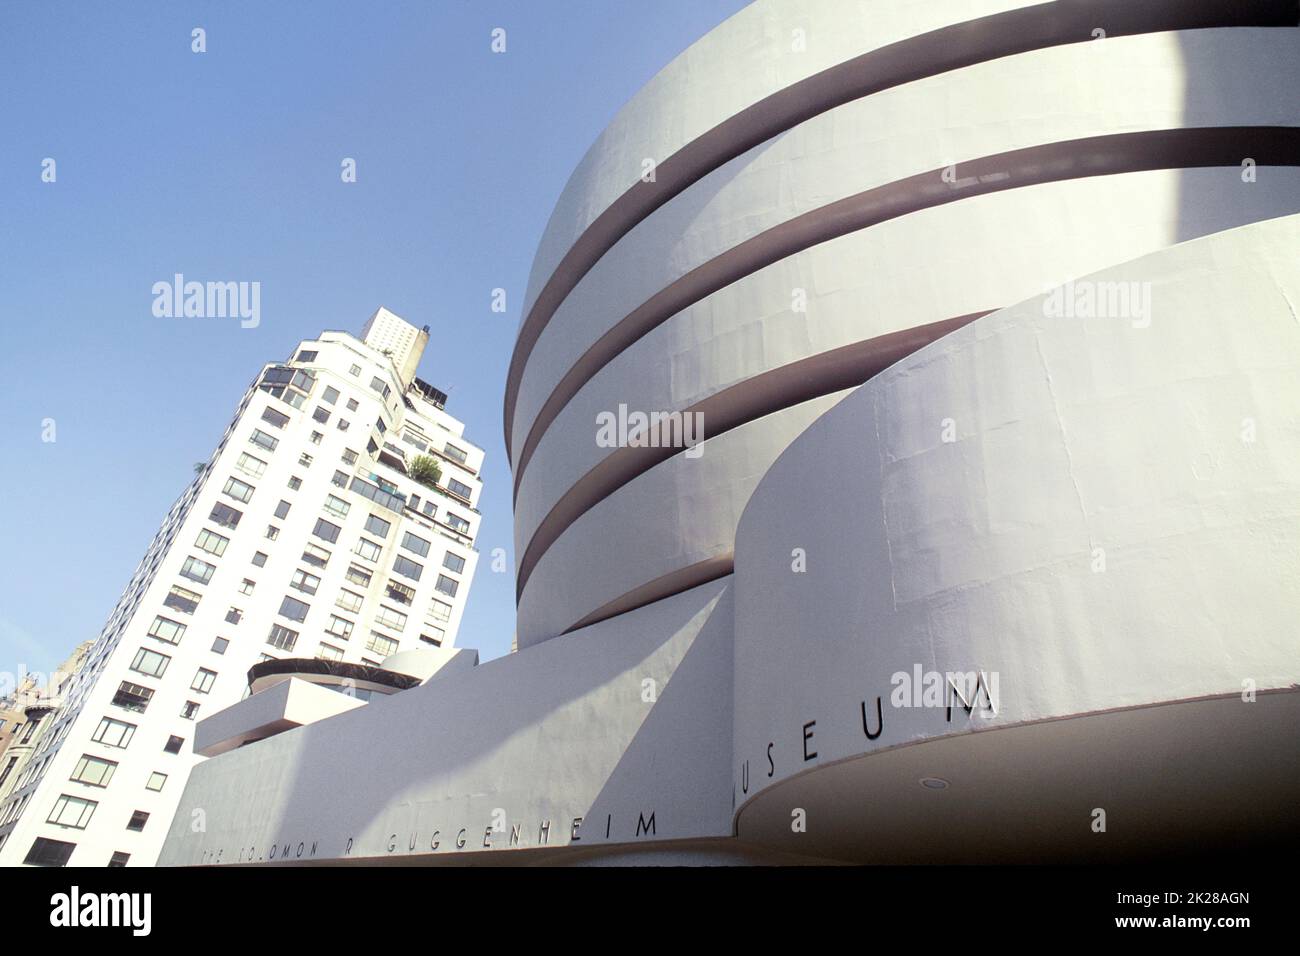 Musée Guggenheim, architecte Frank Lloyd Wright. New York, Cinquième Avenue. Musée d'Art moderne Manhattan Upper East Side, New York, Etats-Unis. Extérieur Banque D'Images